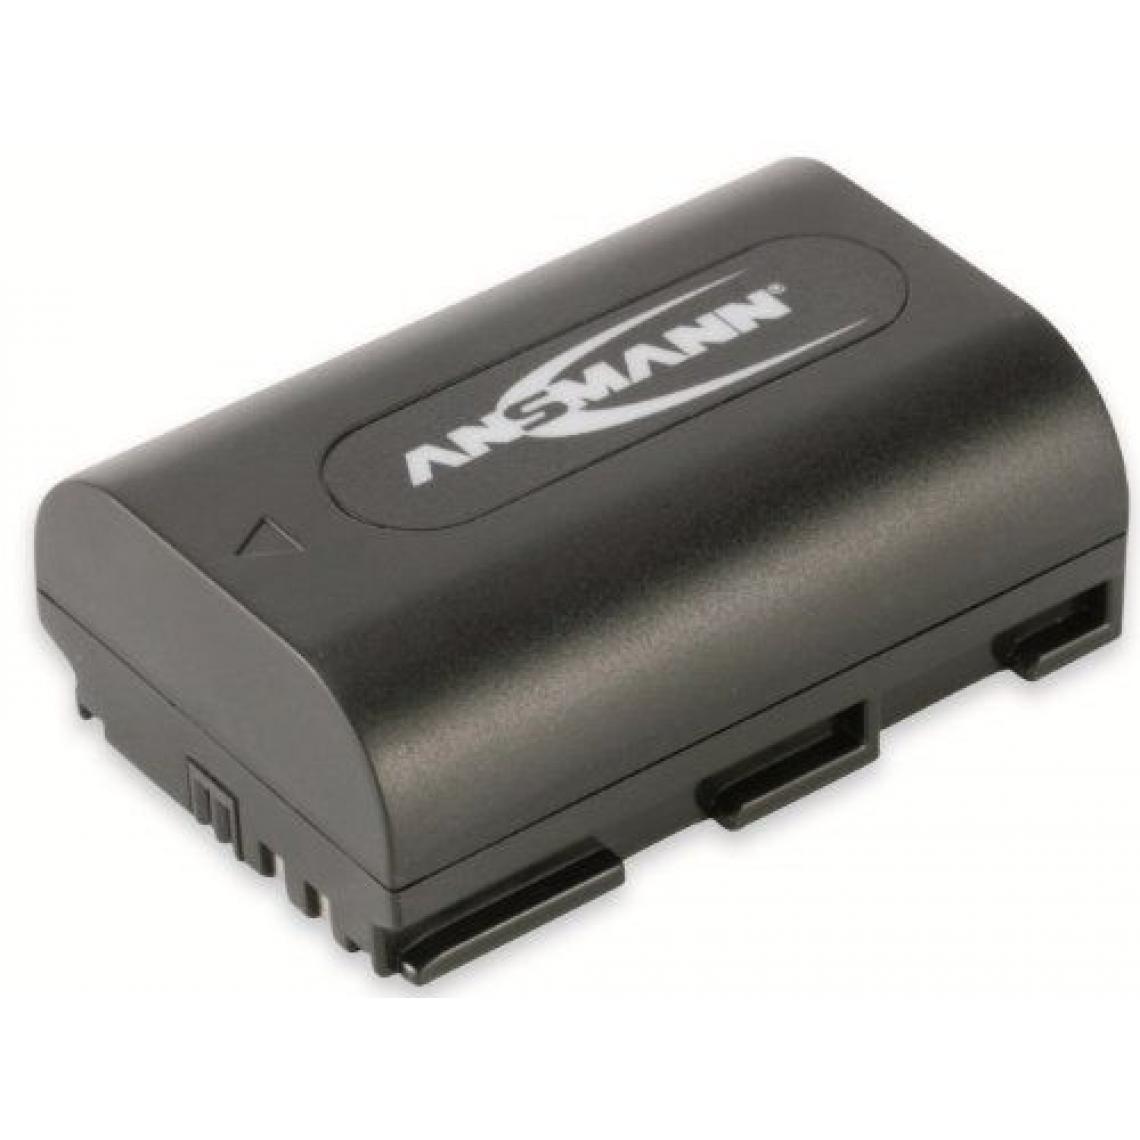 Inconnu - Ansmann Batterie pour Appareil Photo / Caméscope A-Can LP E-6 7.4V 1400 mAh - Batterie Photo & Video